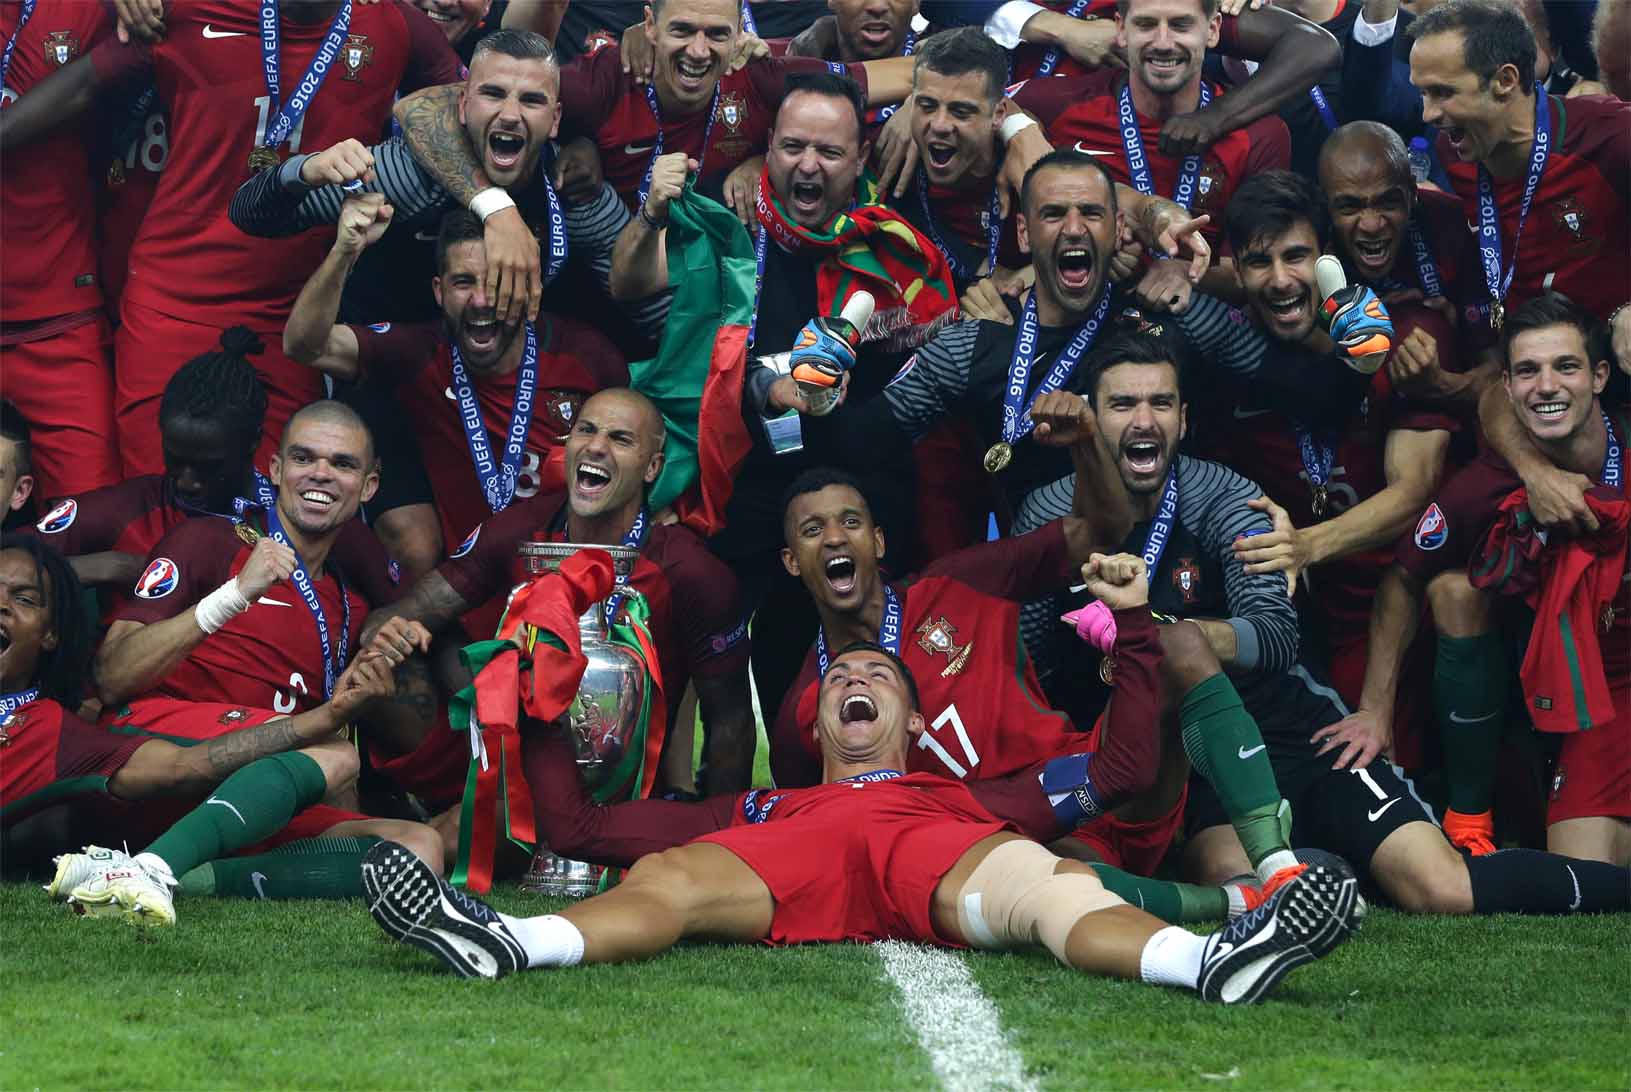 נבחרת פורטוגל אחרי הזכייה ביורו 2016